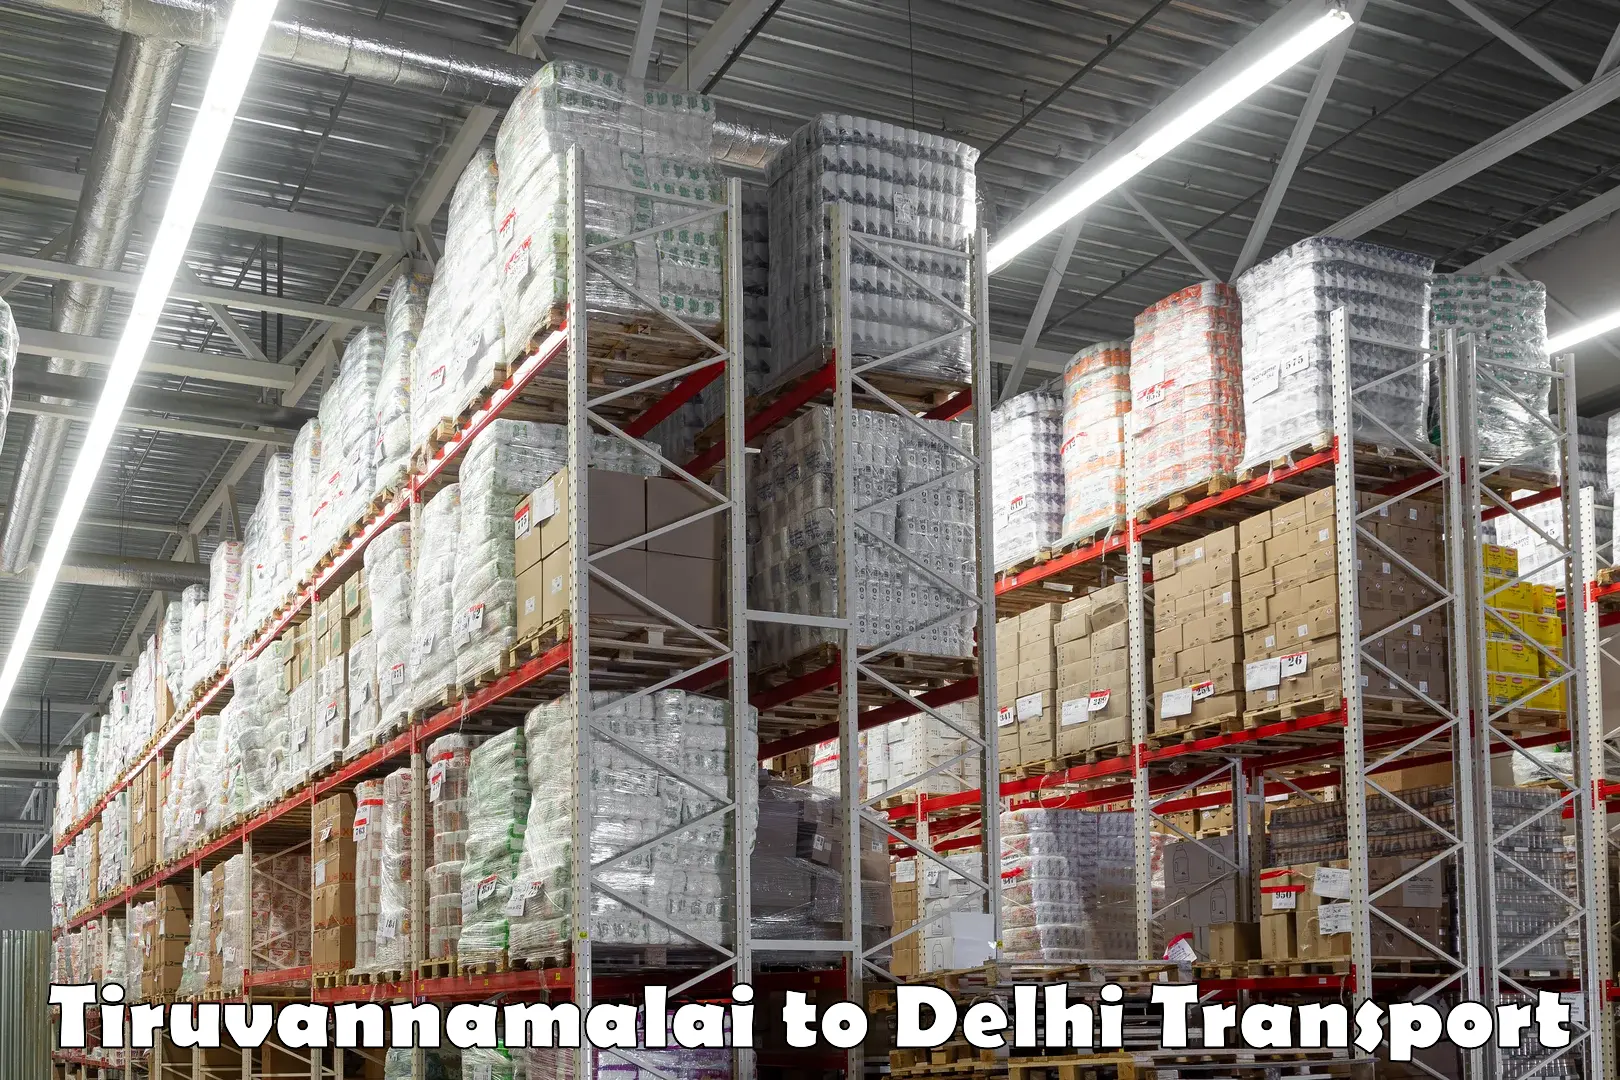 Part load transport service in India Tiruvannamalai to IIT Delhi